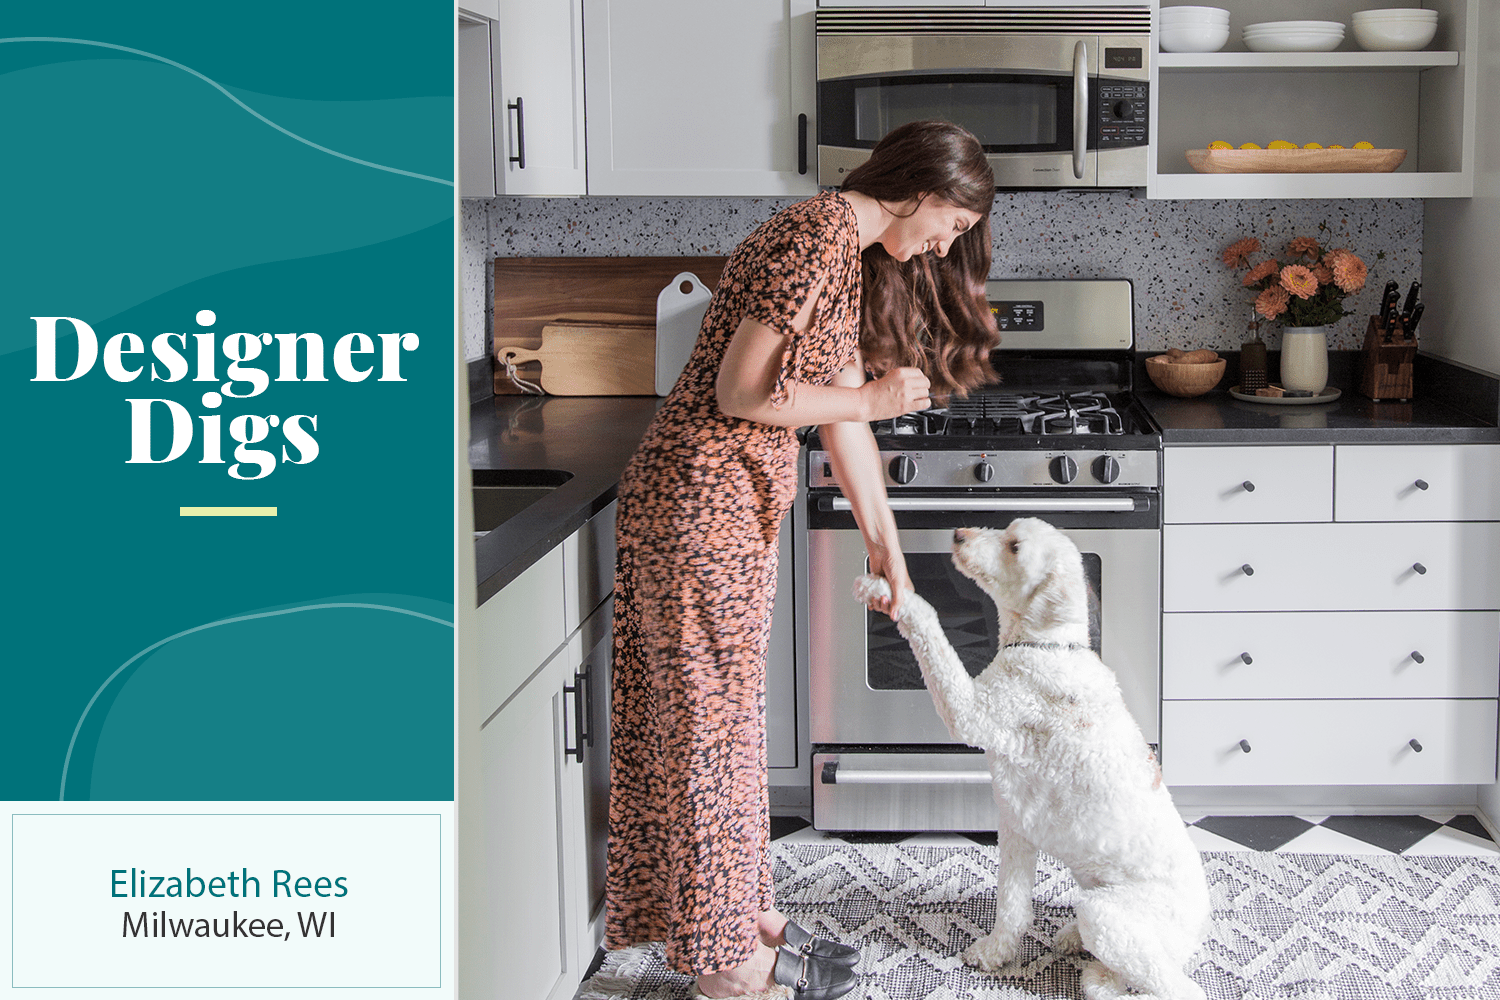 Designerin Elizabeth Rees in ihrer Küche mit ihrem weißen Hund.